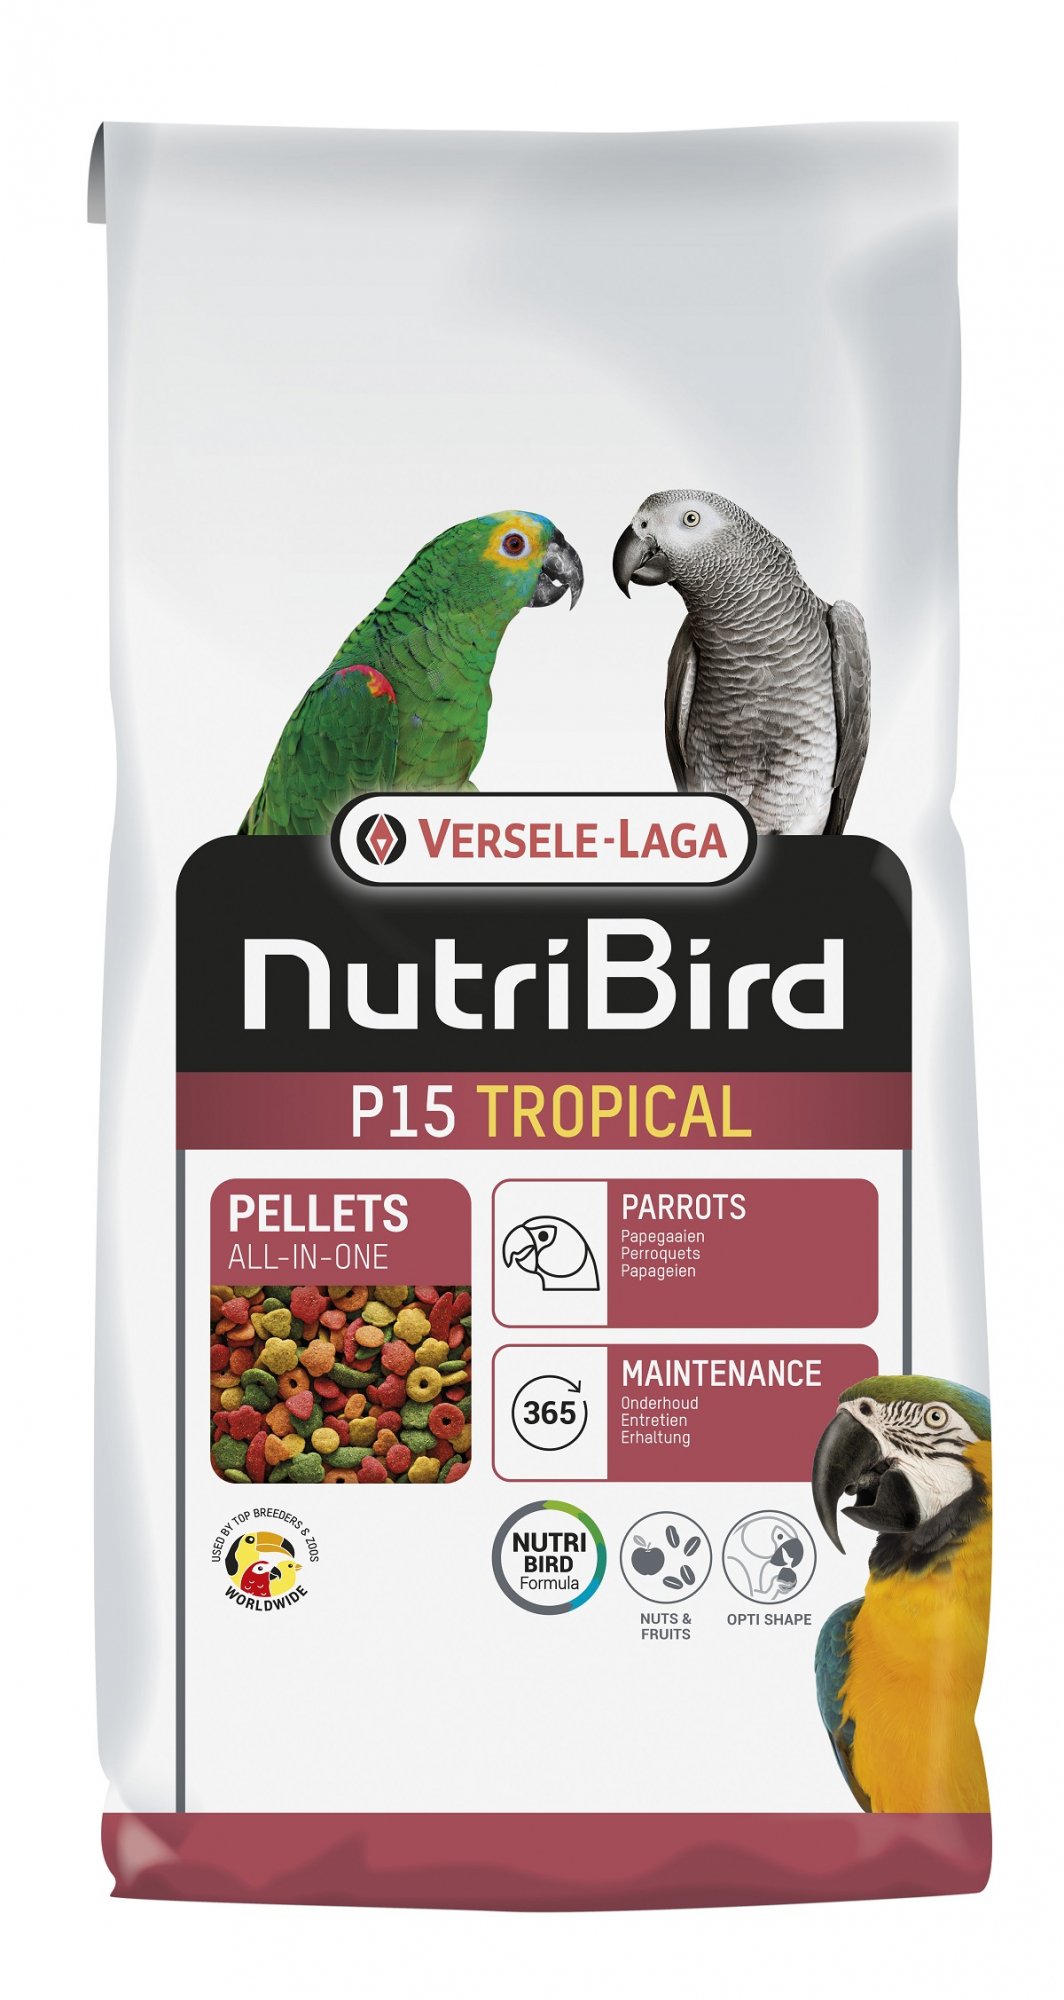 NutriBird P15 Tropical Comida para loros